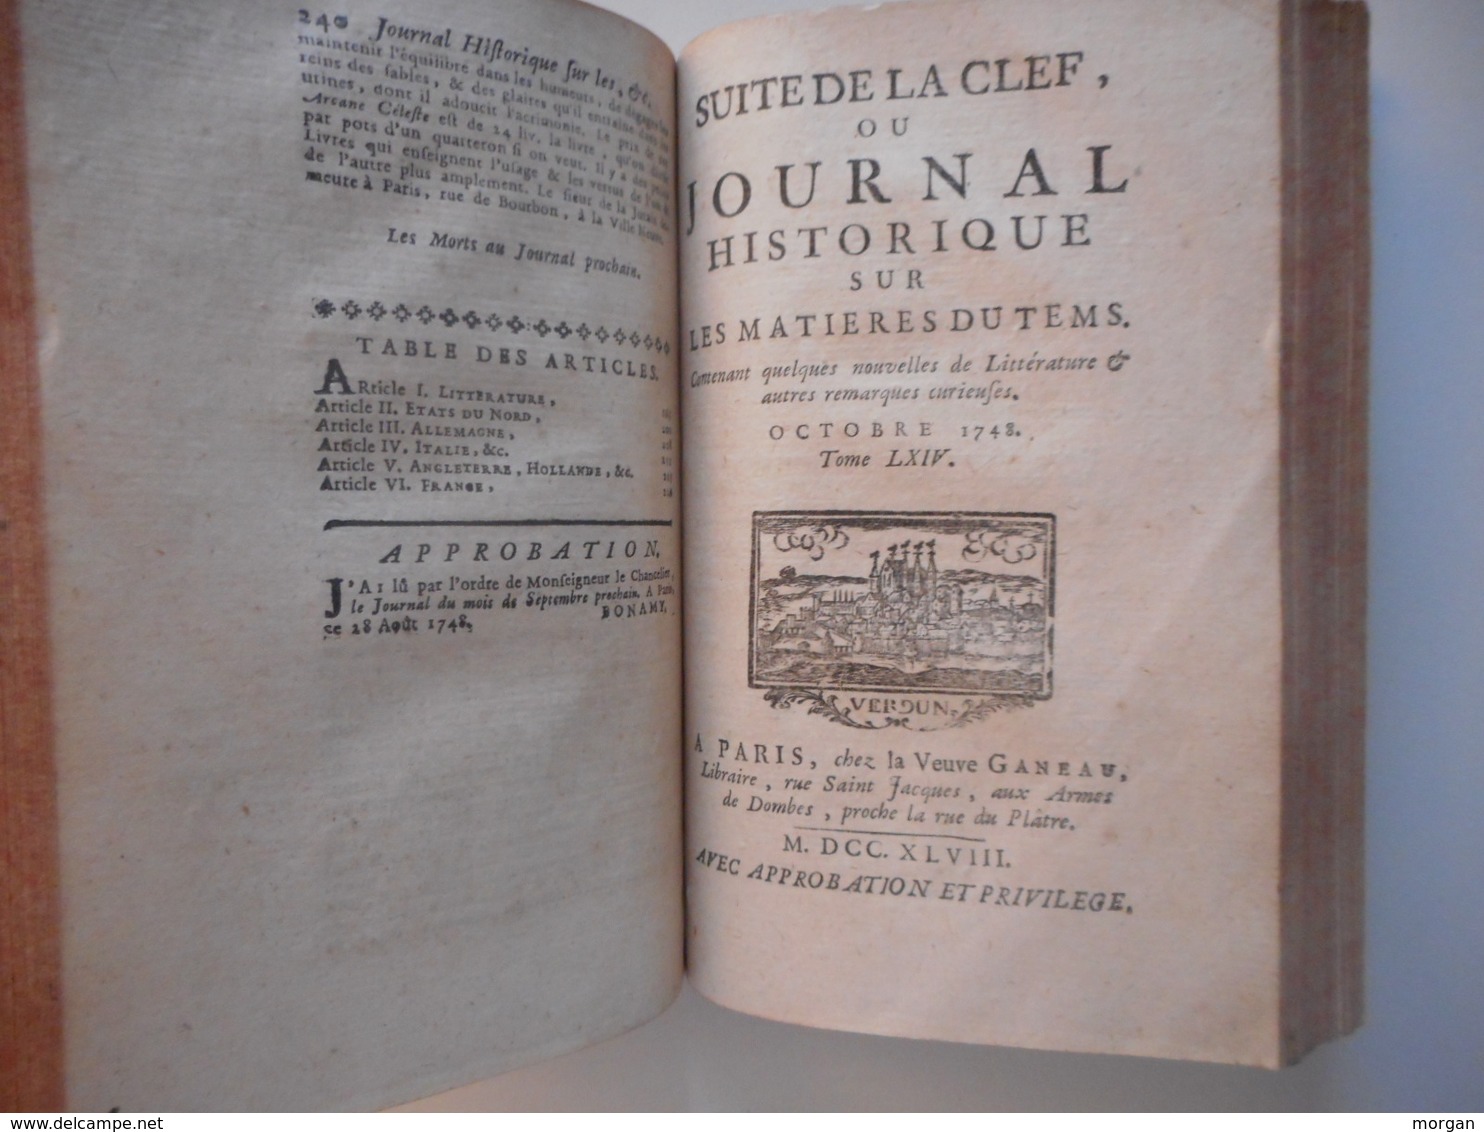 1748, SUITE DE LA CLEF OU JOURNAL HISTORIQUE, ANNEE COMPLETE 2 VOL. 1748, JOURNAL DE VERDUN 1748